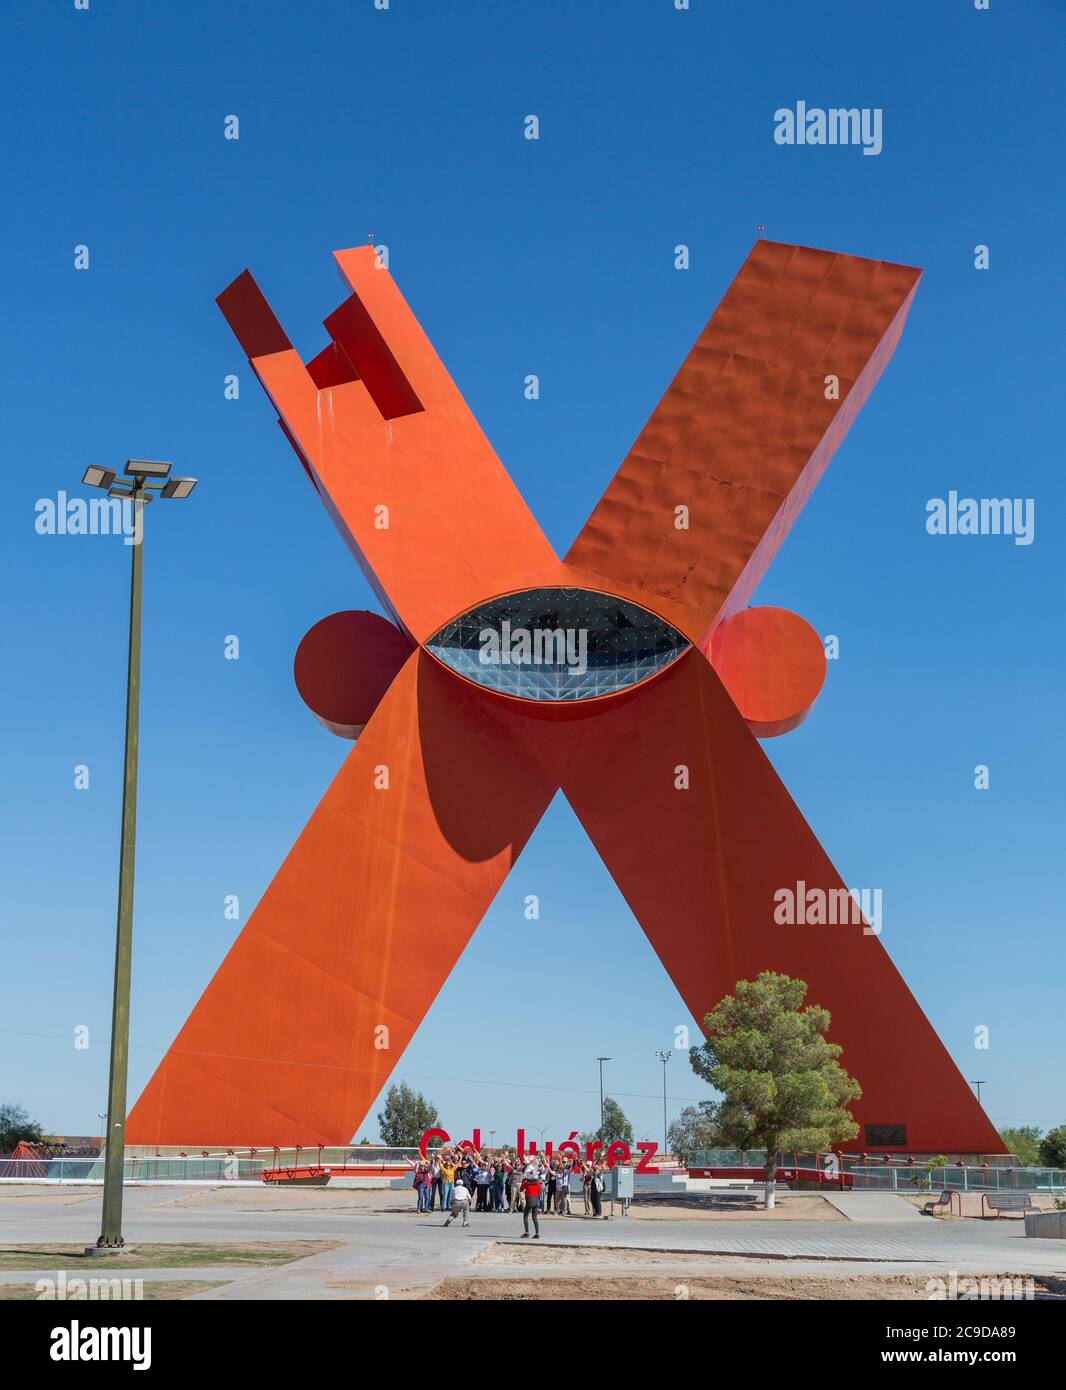 Ciudad Juarez, Chihuahua, Mexique. La X de Sebastian, Sculpture d'Enrique Carbajal Gonzalez, commémorant Mexicanidad, le concept de Mexico-Ness. Banque D'Images